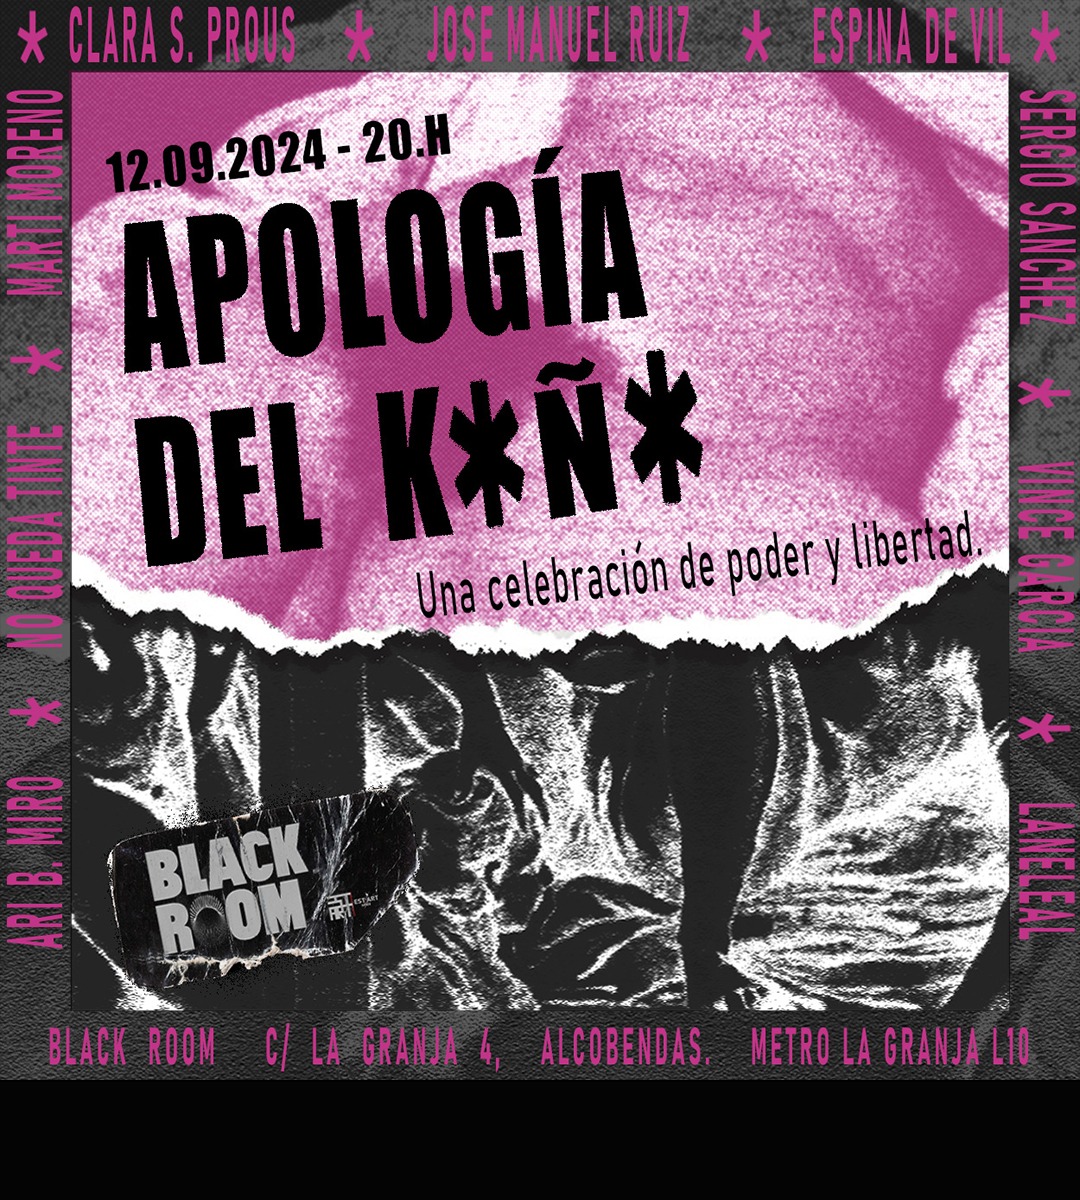 Entre el 12 de septiembre y el 26 de octubre LA BLACK ROOM acoge APOLOGÍA DEL KOÑO. Una celebración de poder y libertad. La BLACK ROOM | EST_ART Space, Alcobendas, Madrid